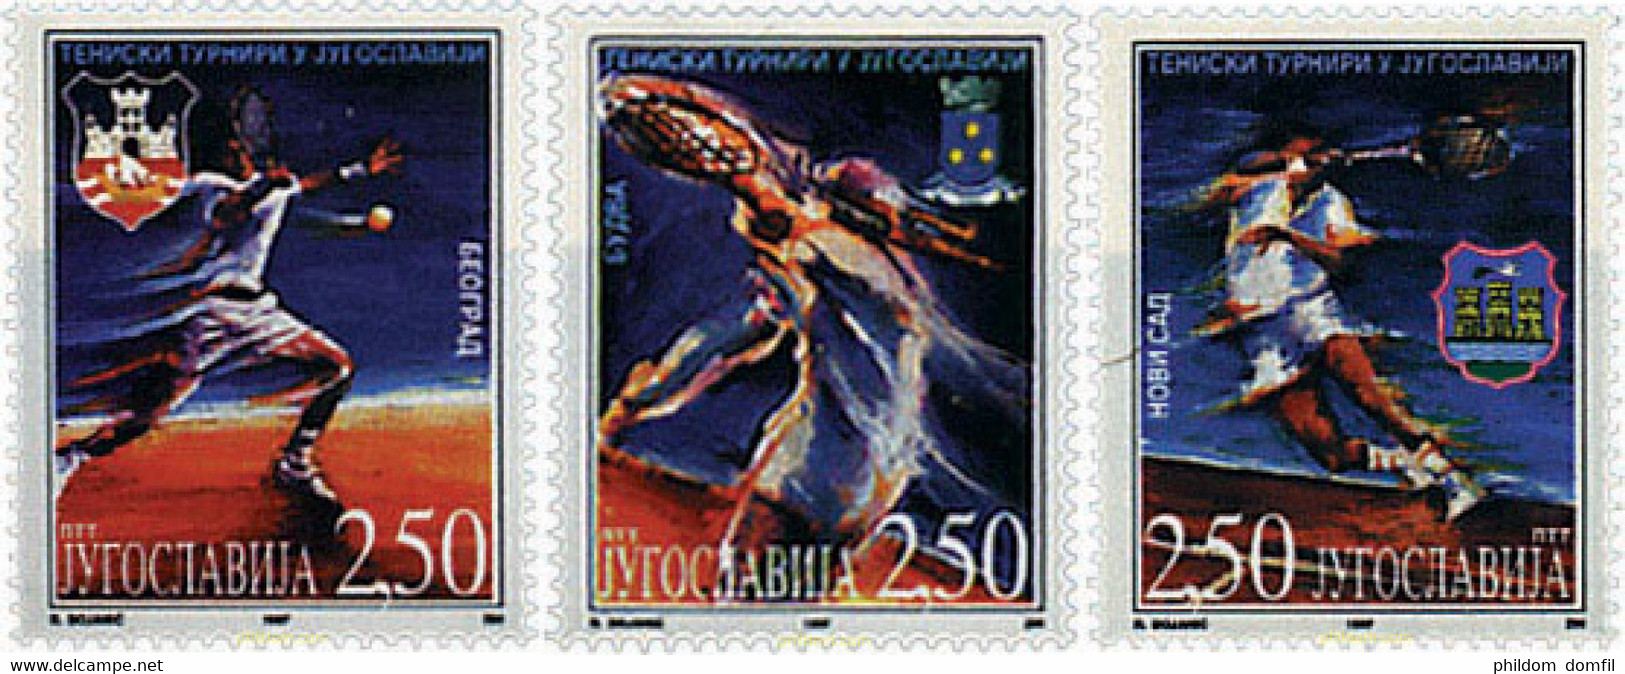 48084 MNH YUGOSLAVIA 1997 TORNEO DE TENIS EN YUGOSLAVIA - Gebruikt